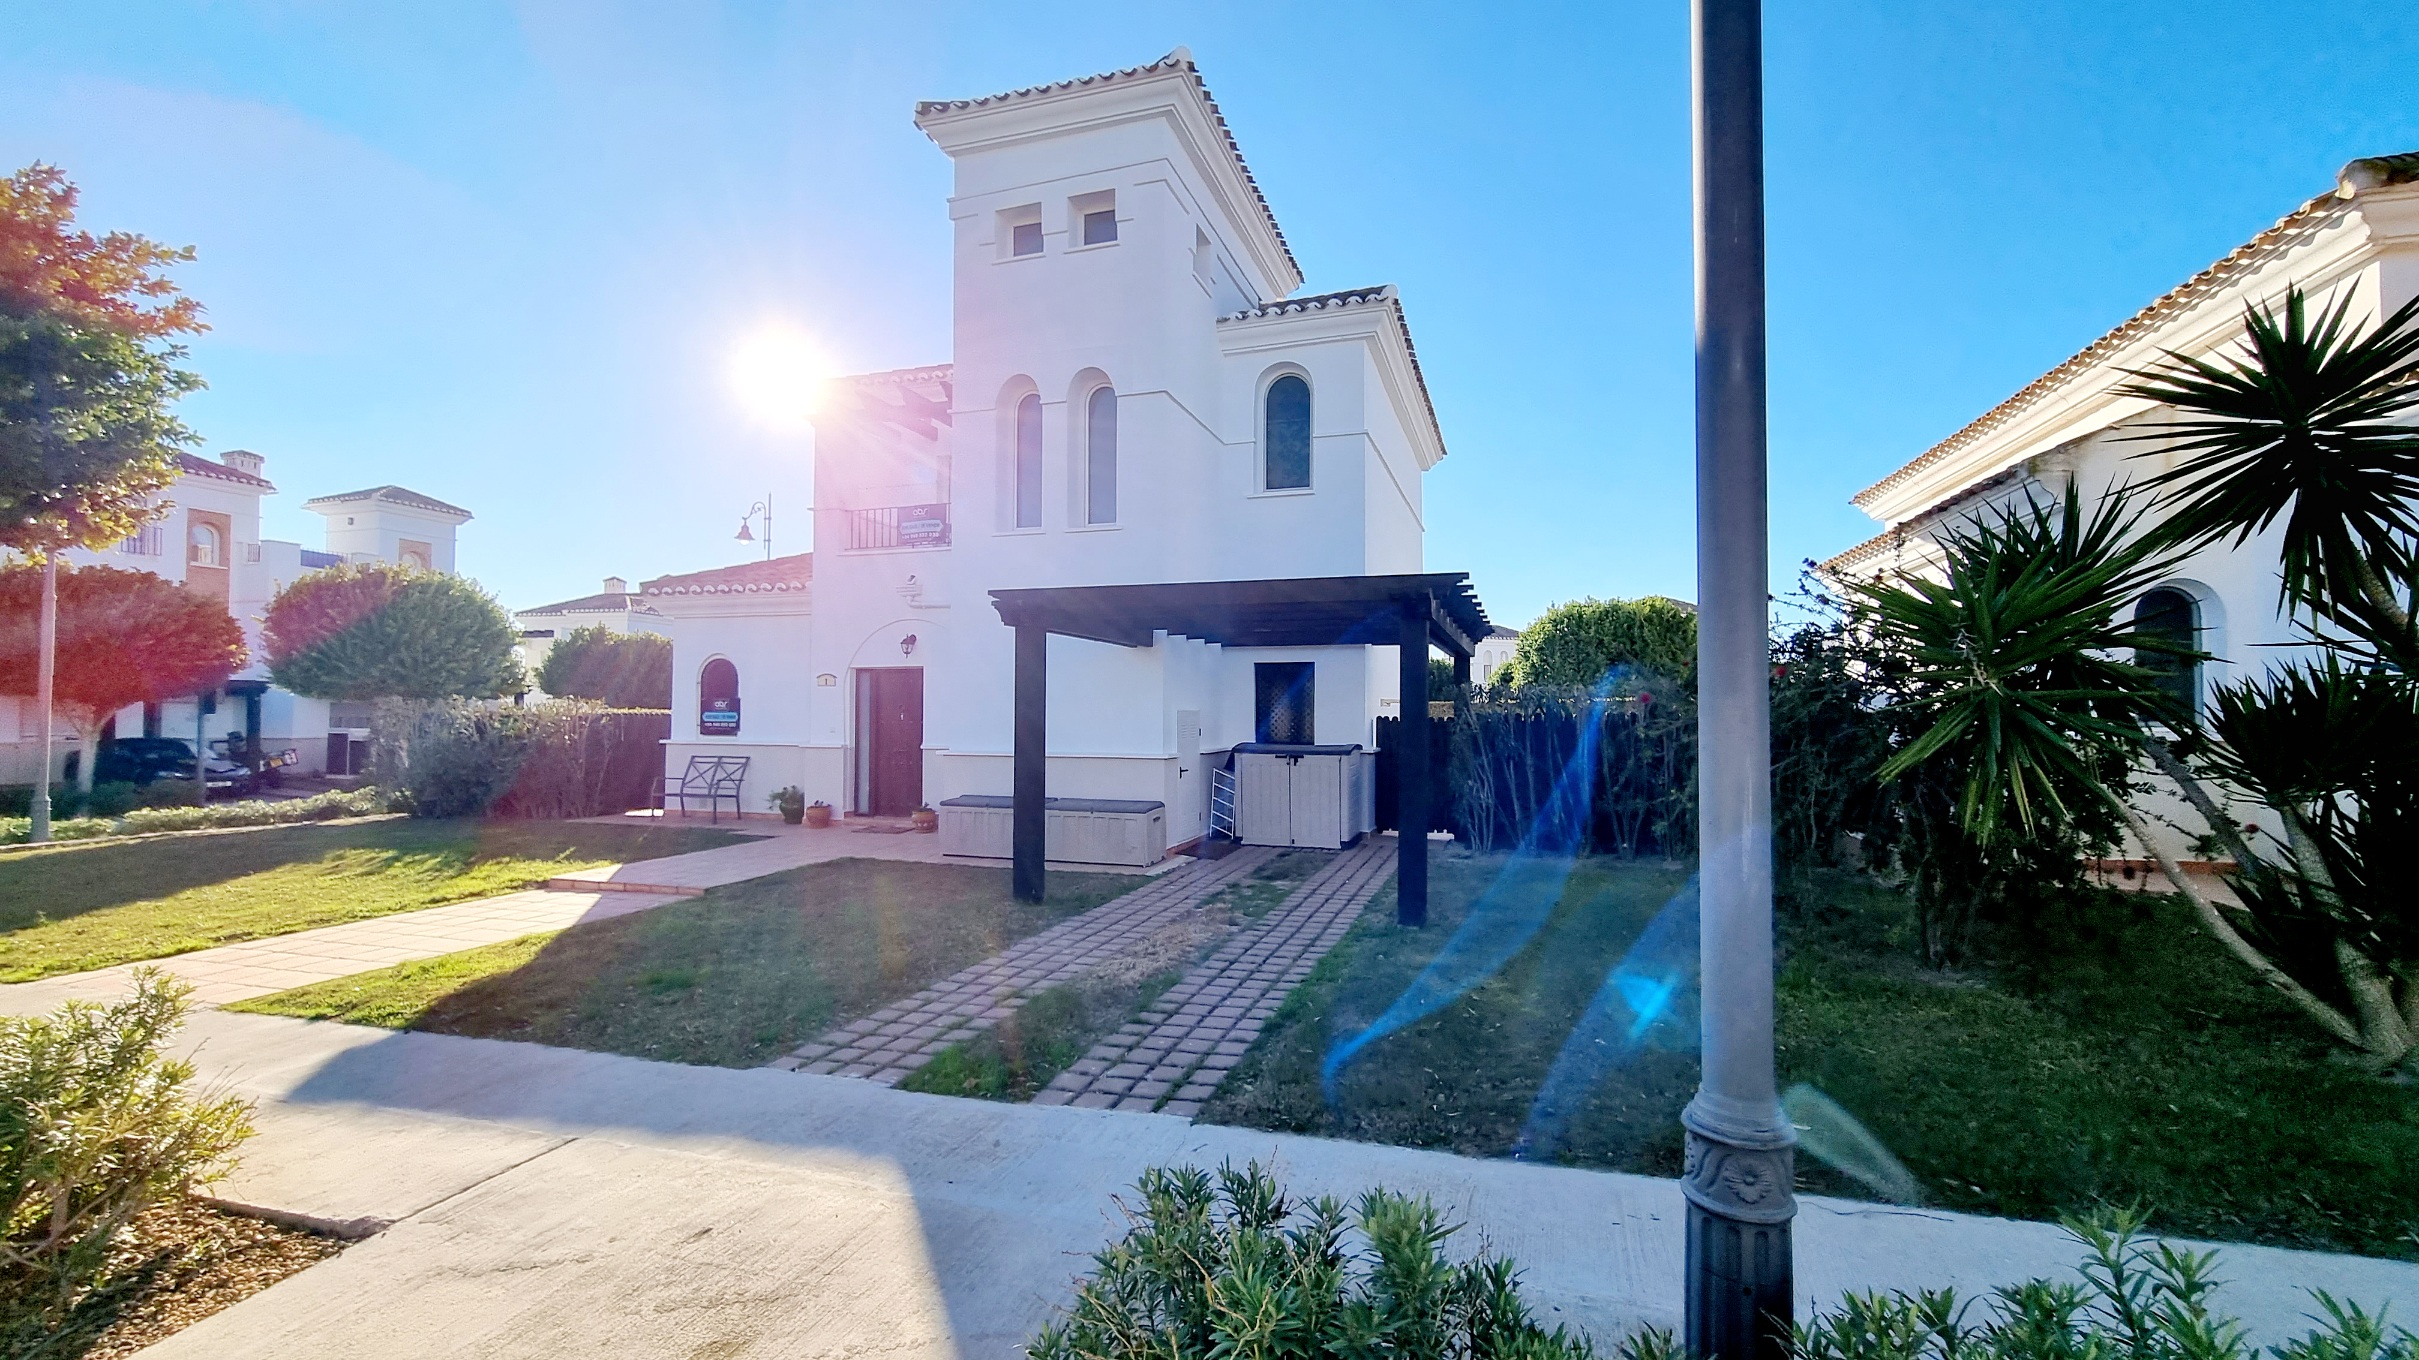 3 Bedroom 3 Bathroom Enebro Villa For Sale on La Torre Golf Resort – Murcia